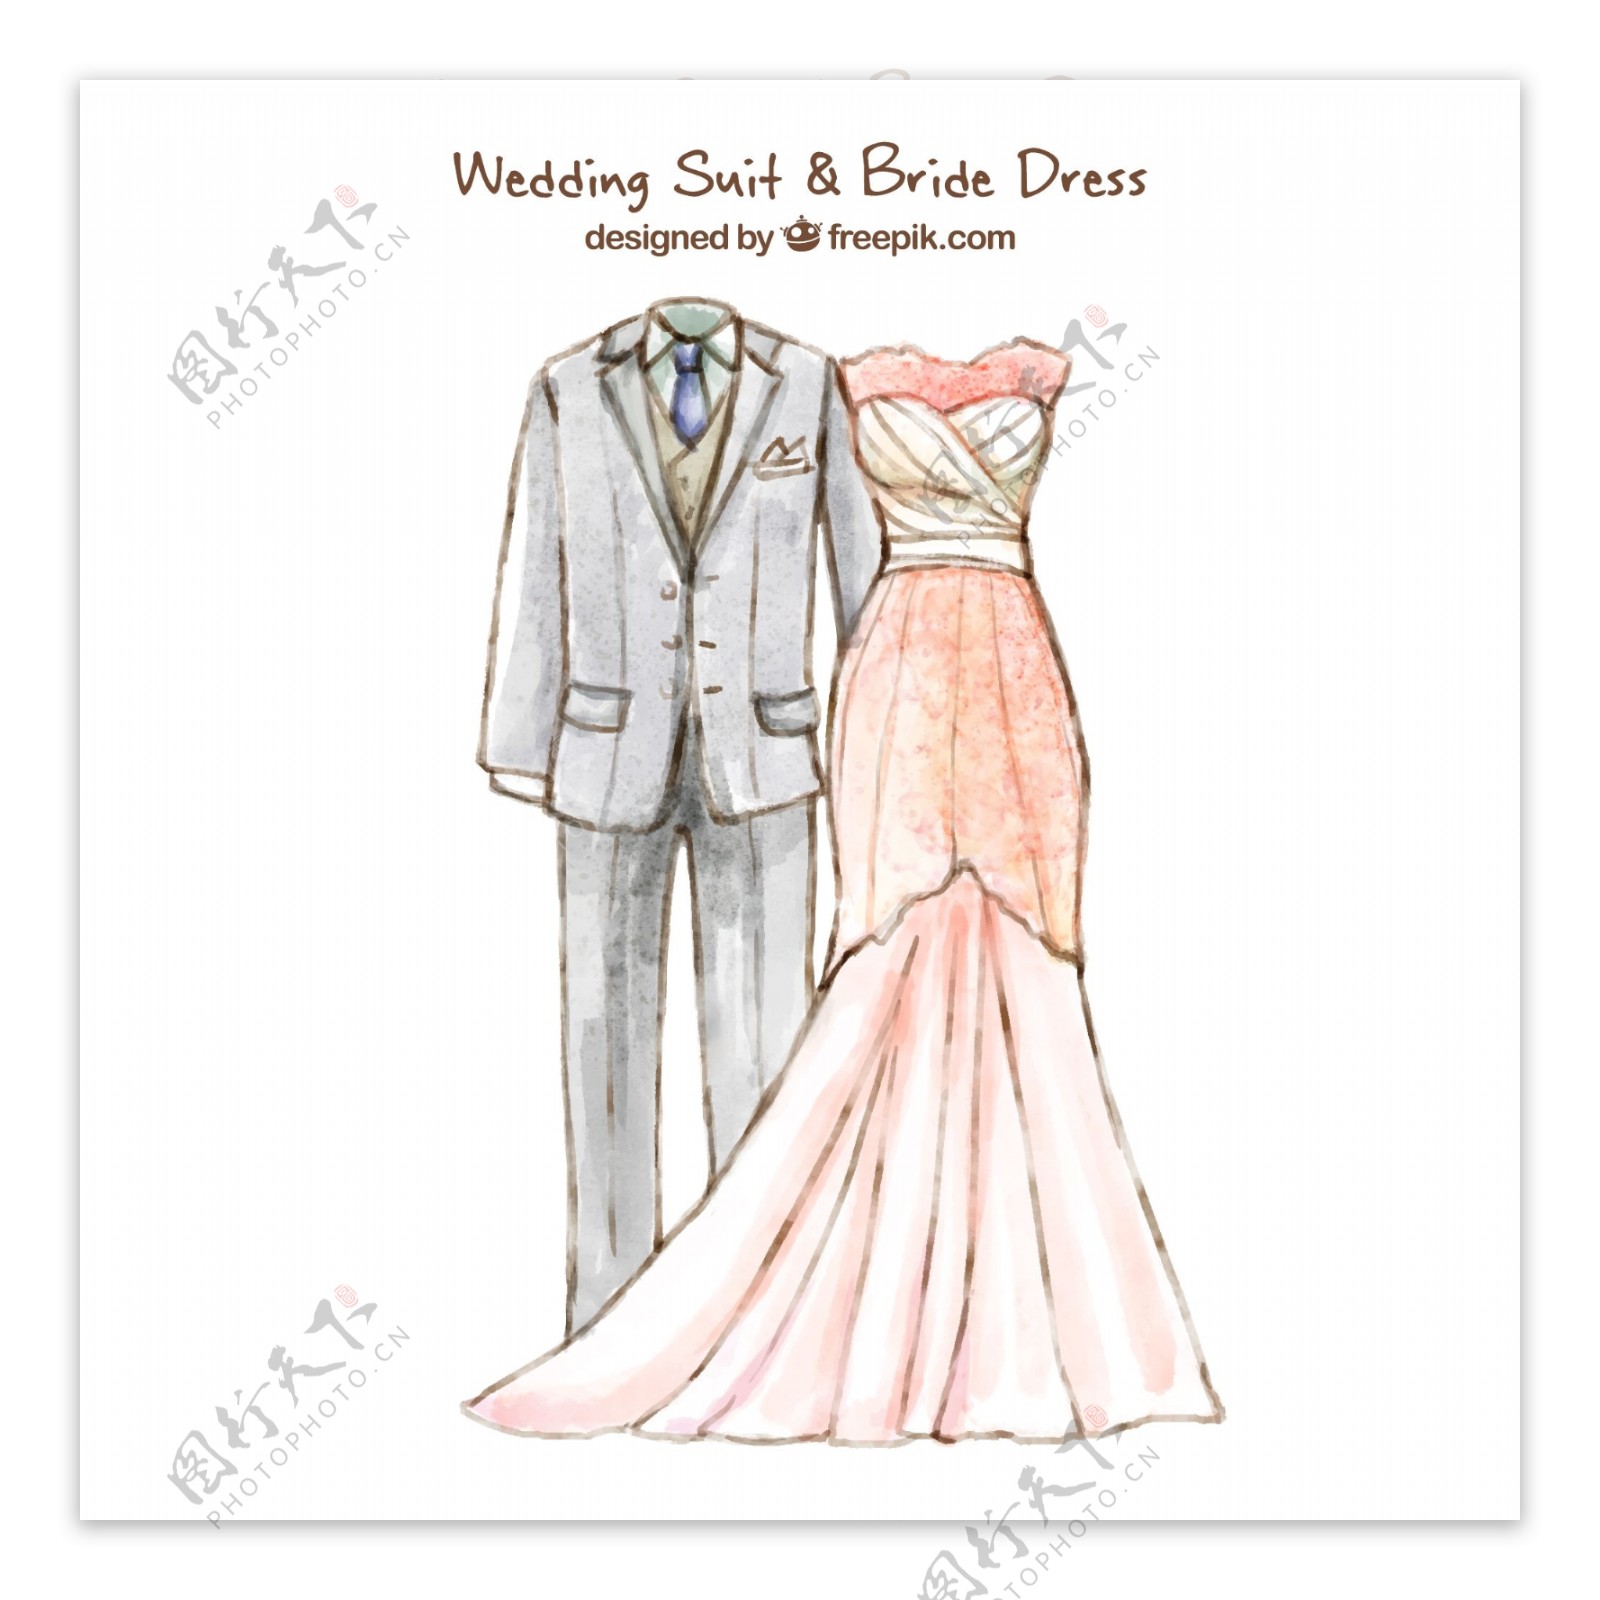 漂亮的结婚礼服和新娘礼服设计